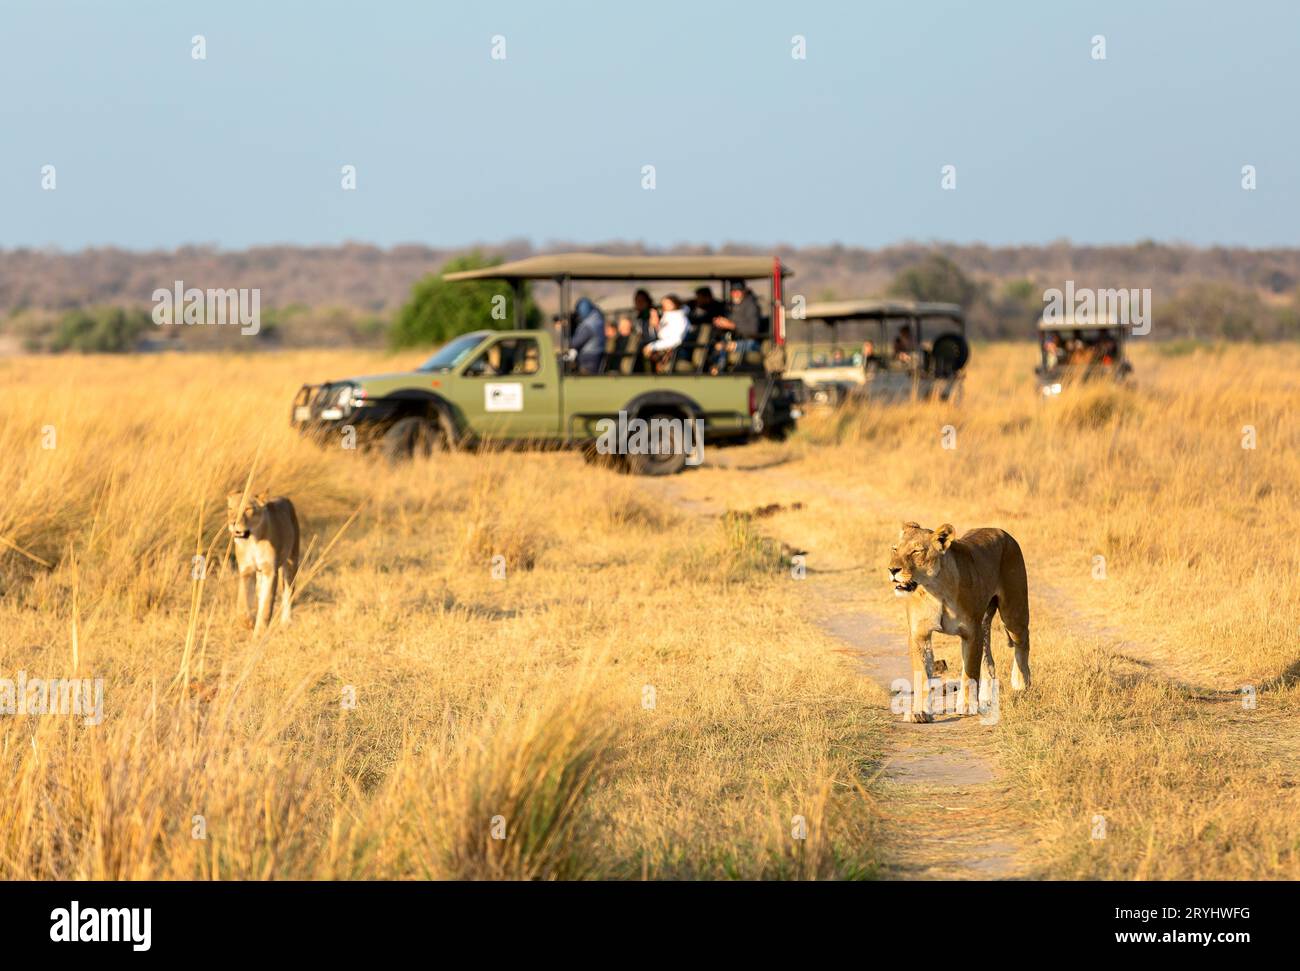 Lionesse spazieren auf der Straße vor dem Hintergrund eines Autos mit Touristen. Afrika. Stockfoto